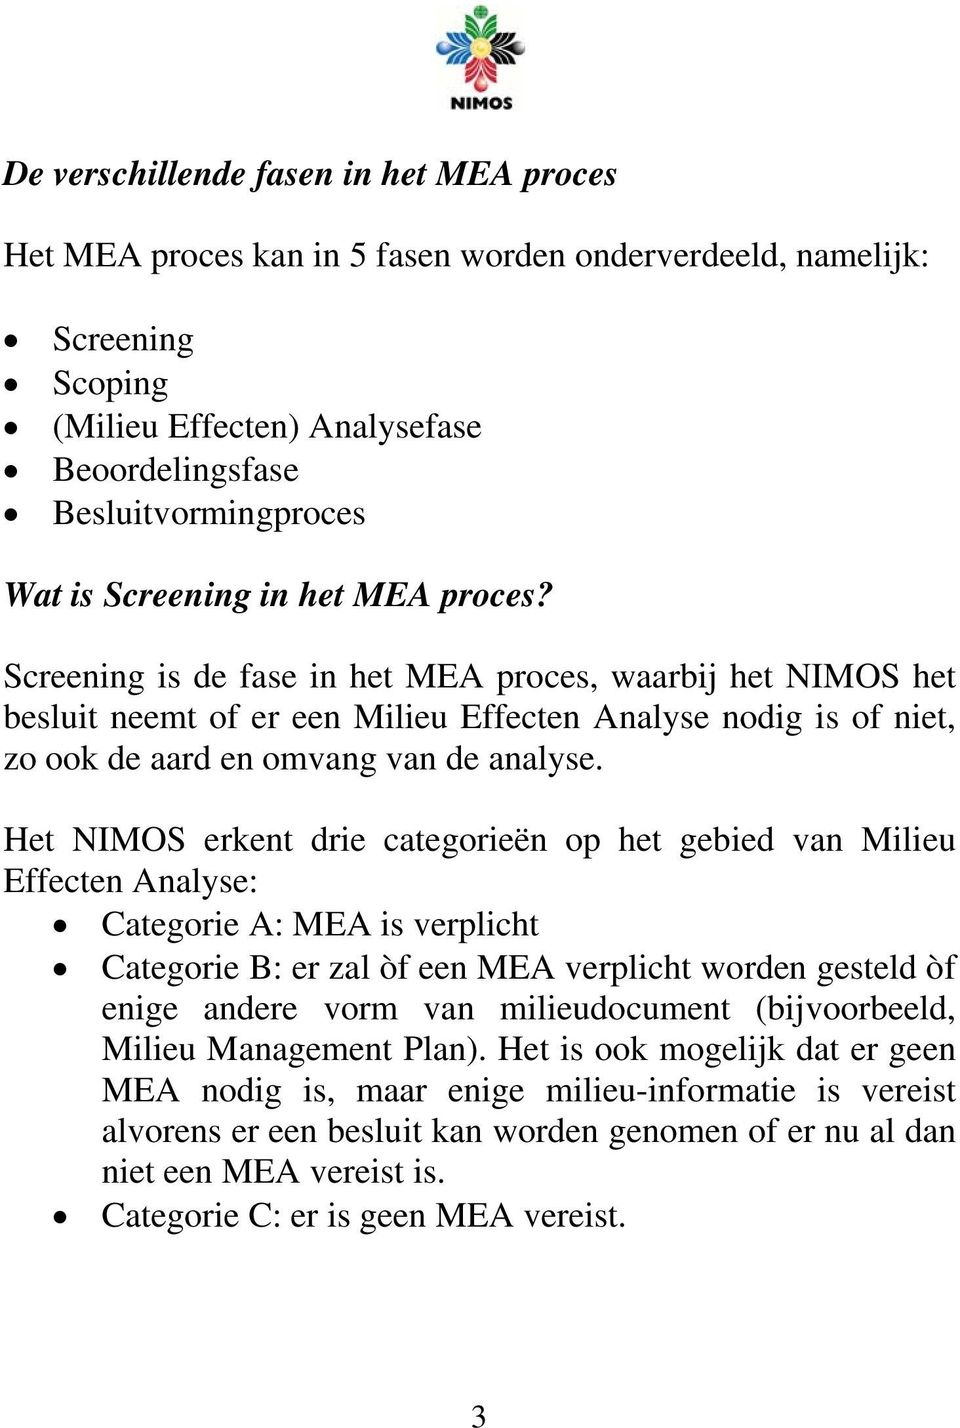 Het NIMOS erkent drie categorieën op het gebied van Milieu Effecten Analyse: Categorie A: MEA is verplicht Categorie B: er zal òf een MEA verplicht worden gesteld òf enige andere vorm van